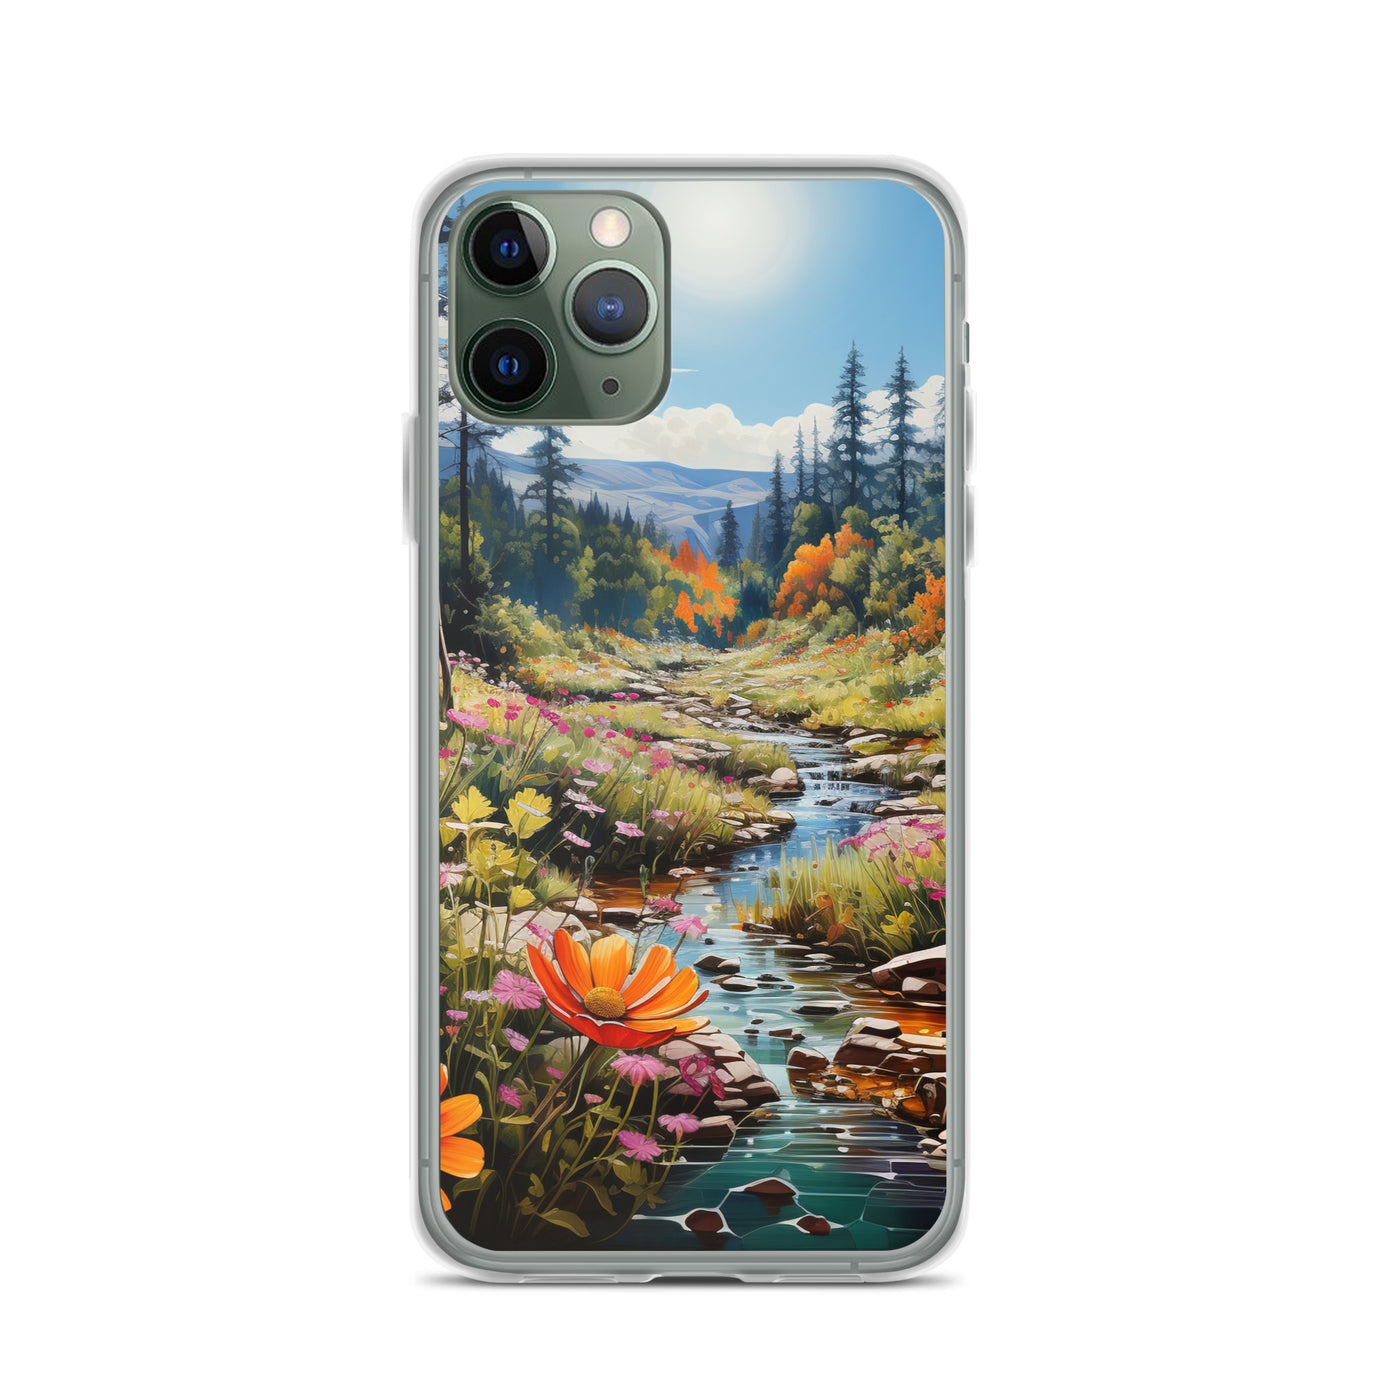 Berge, schöne Blumen und Bach im Wald - iPhone Schutzhülle (durchsichtig) berge xxx iPhone 11 Pro